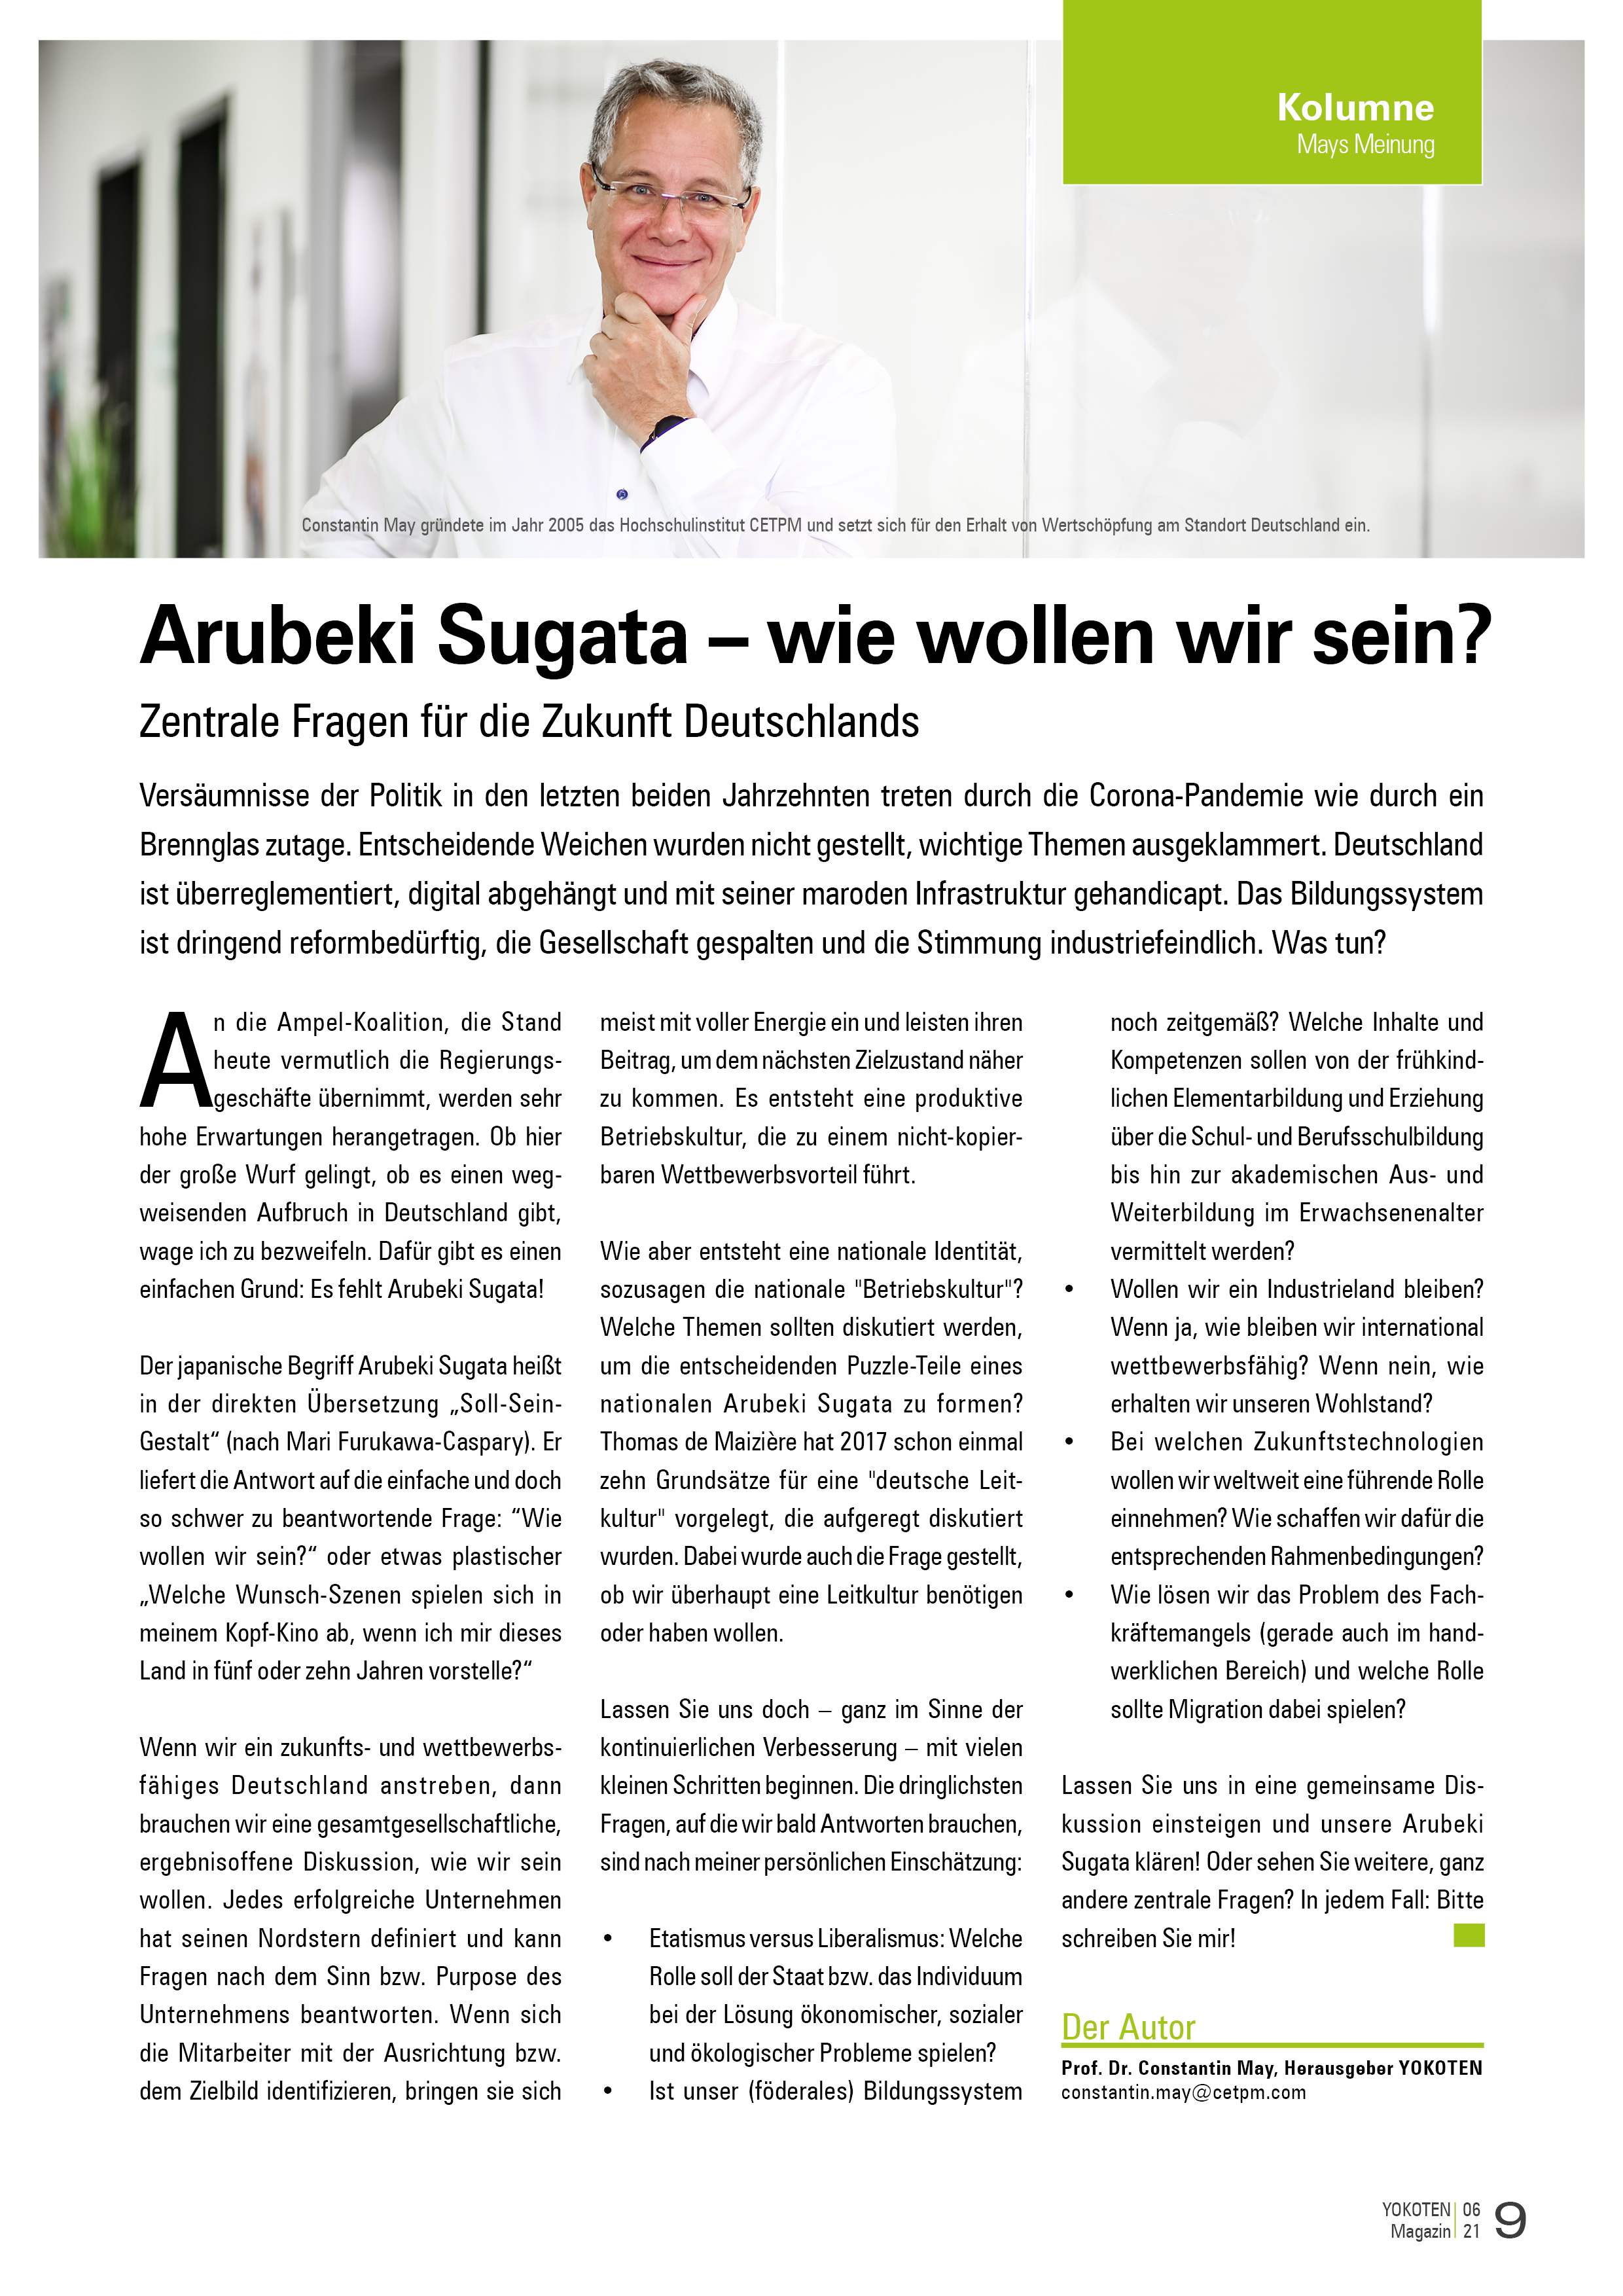 Arubeki Sugata – wie wollen wir sein? - Artikel aus Fachmagazin YOKOTEN 2021-06